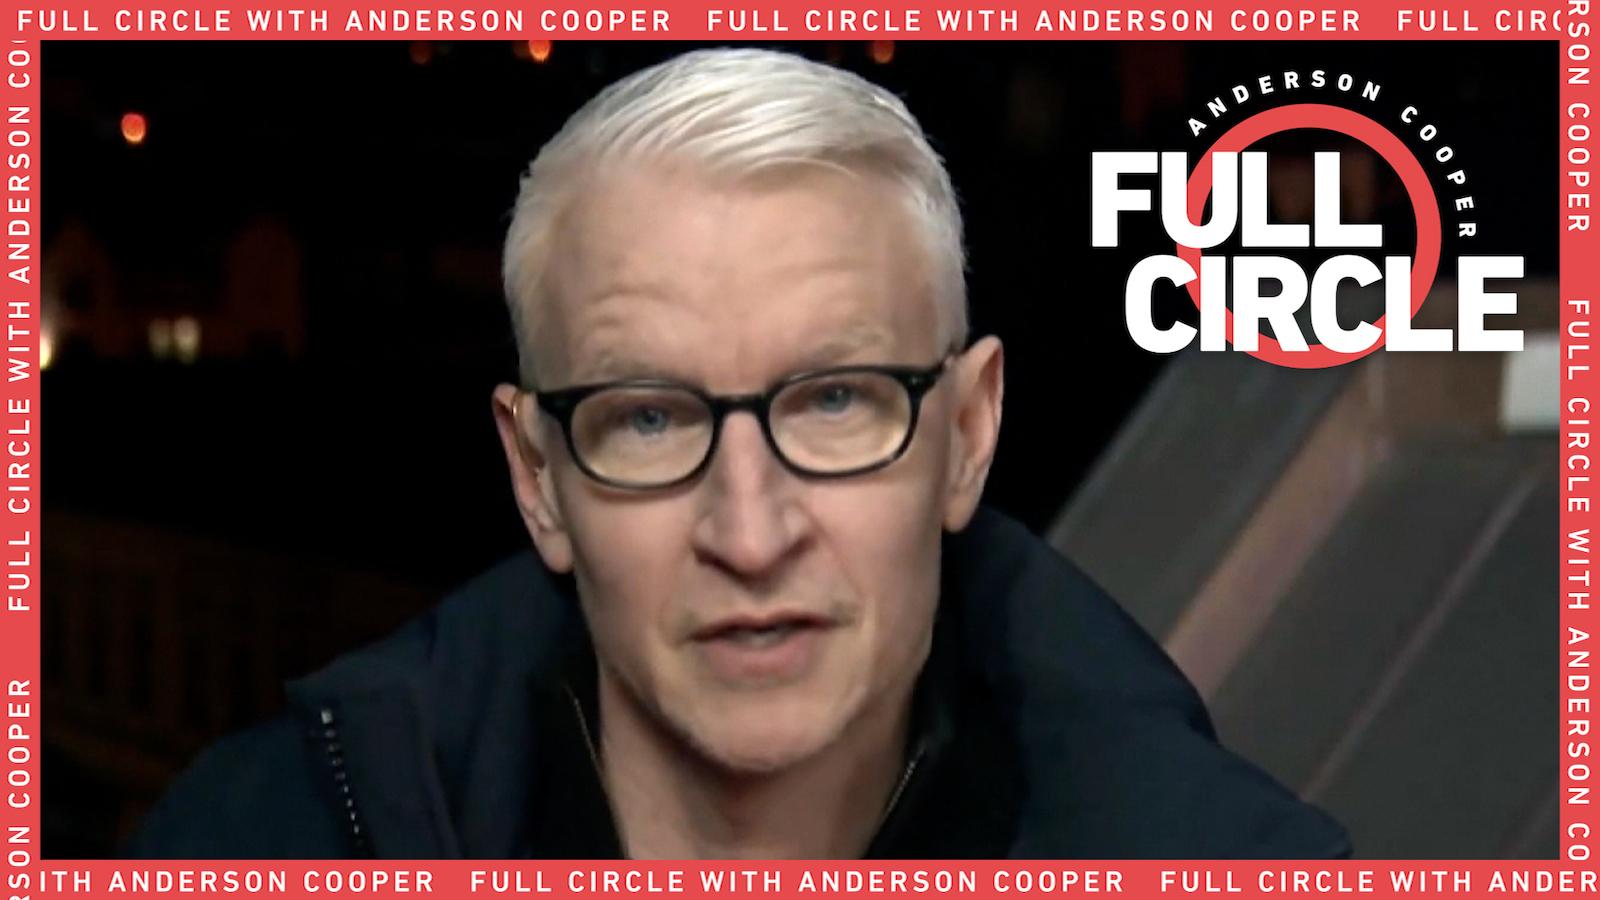 Cnn Profiles Anderson Cooper Cnn Anchor Cnn 0284